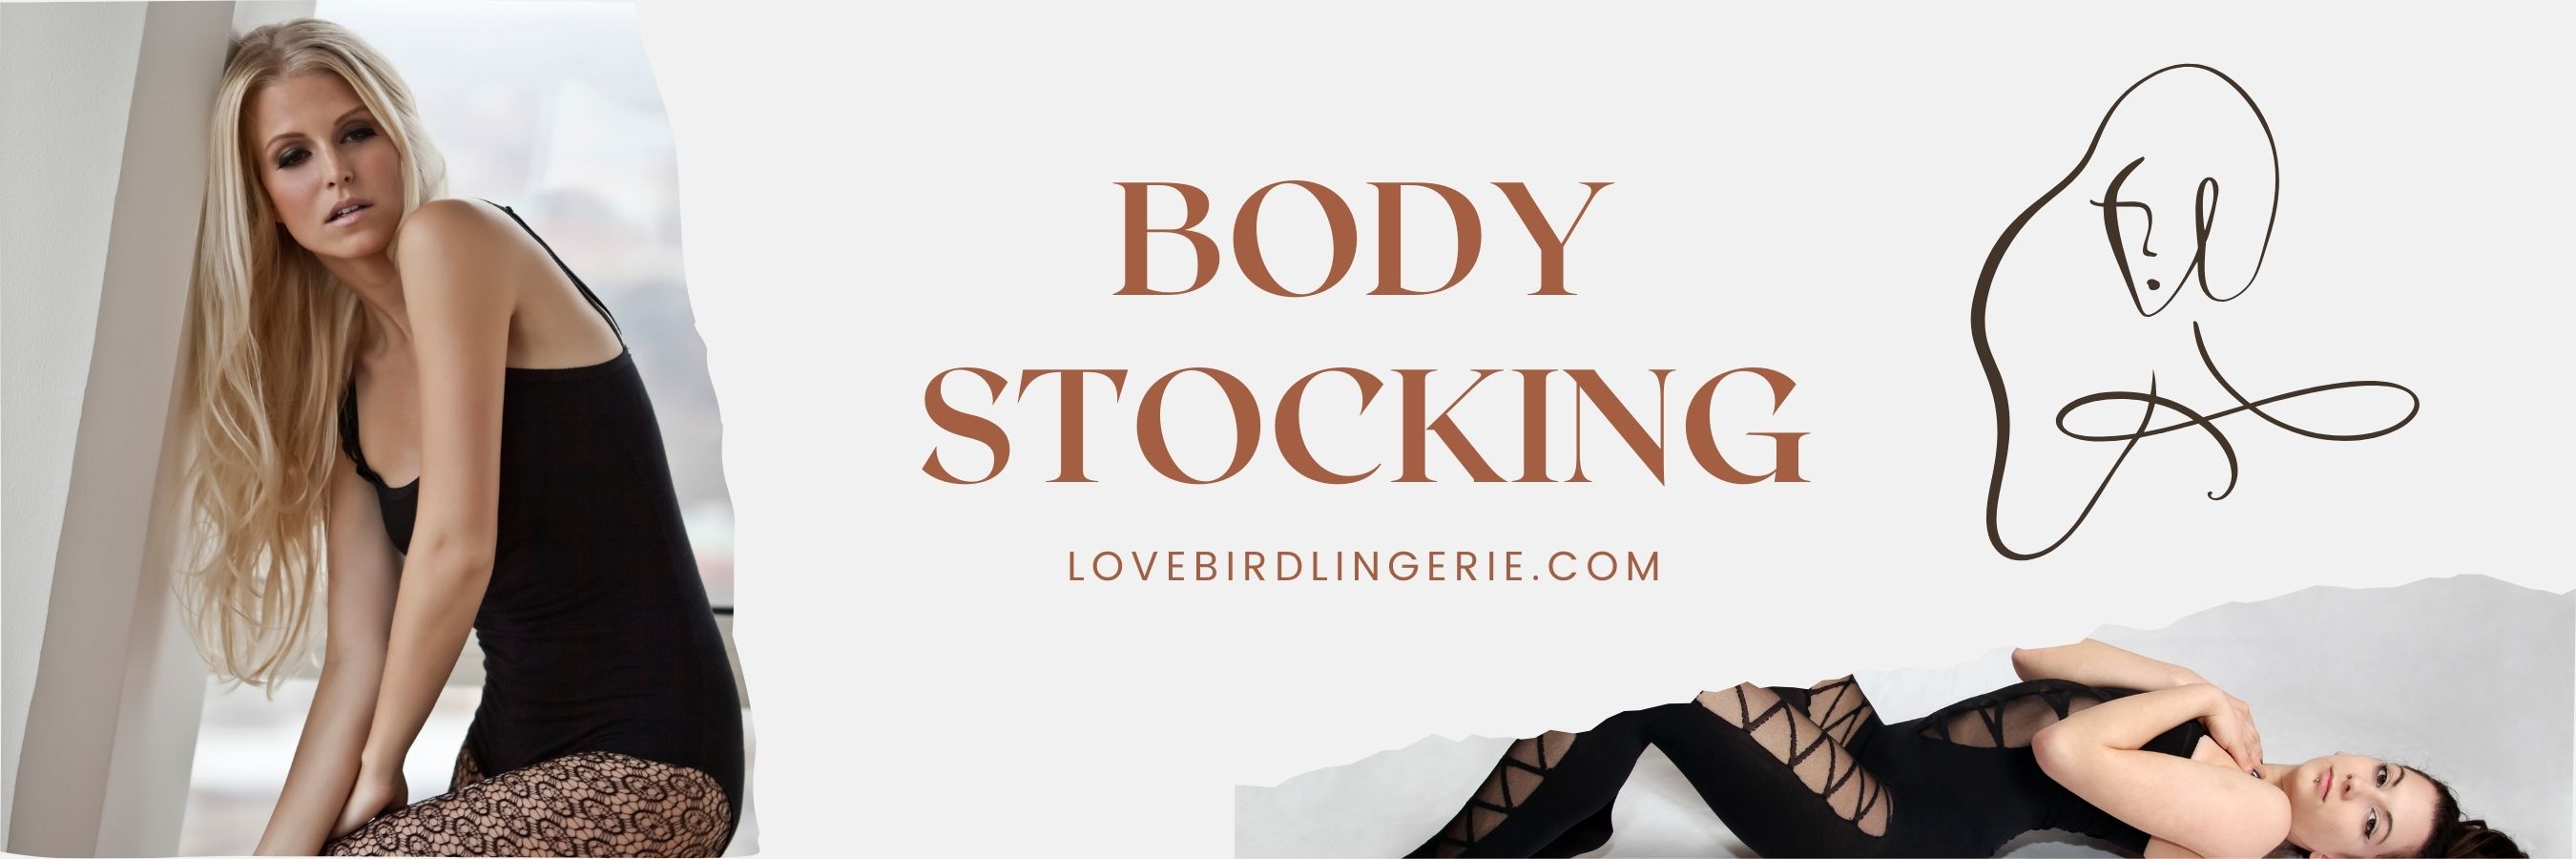 Body Stockings -  Shop for Bod banner lovebird